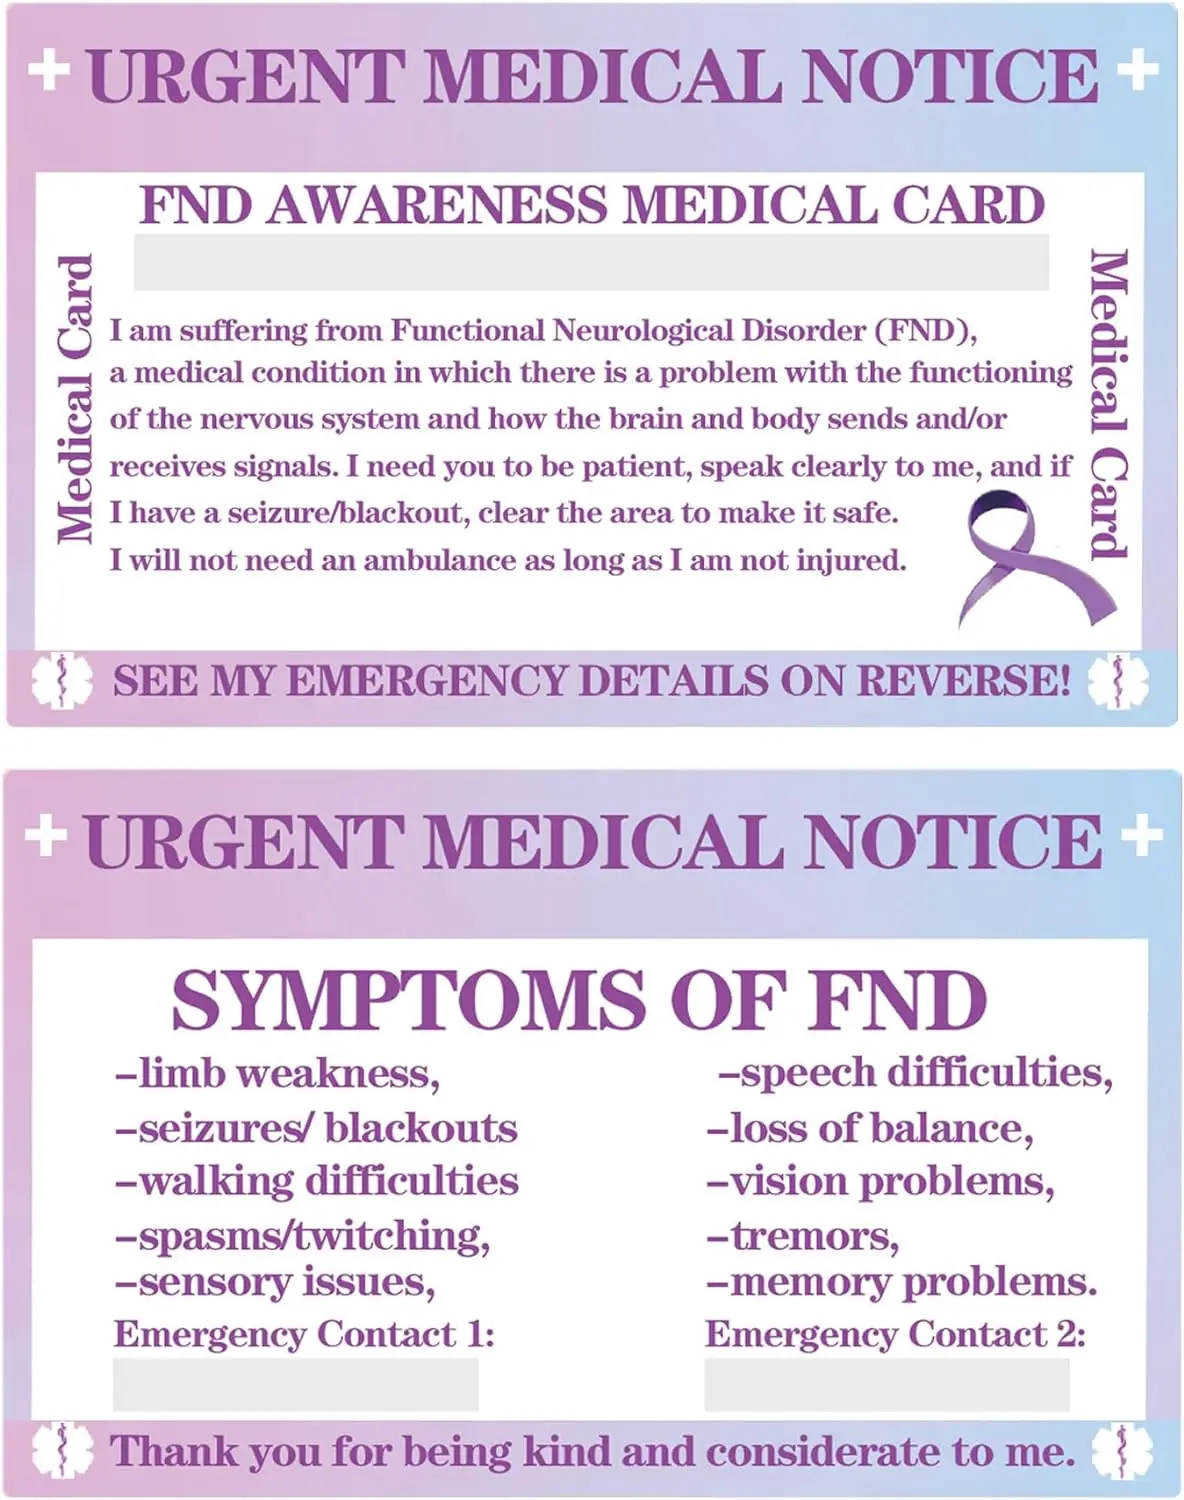 

Красочные Функциональные Неврологические расстройства, медицинская карточка, медицинская карточка с прозрачными фотоэлементами 2,1x3,38 дюйма, 2 шт.